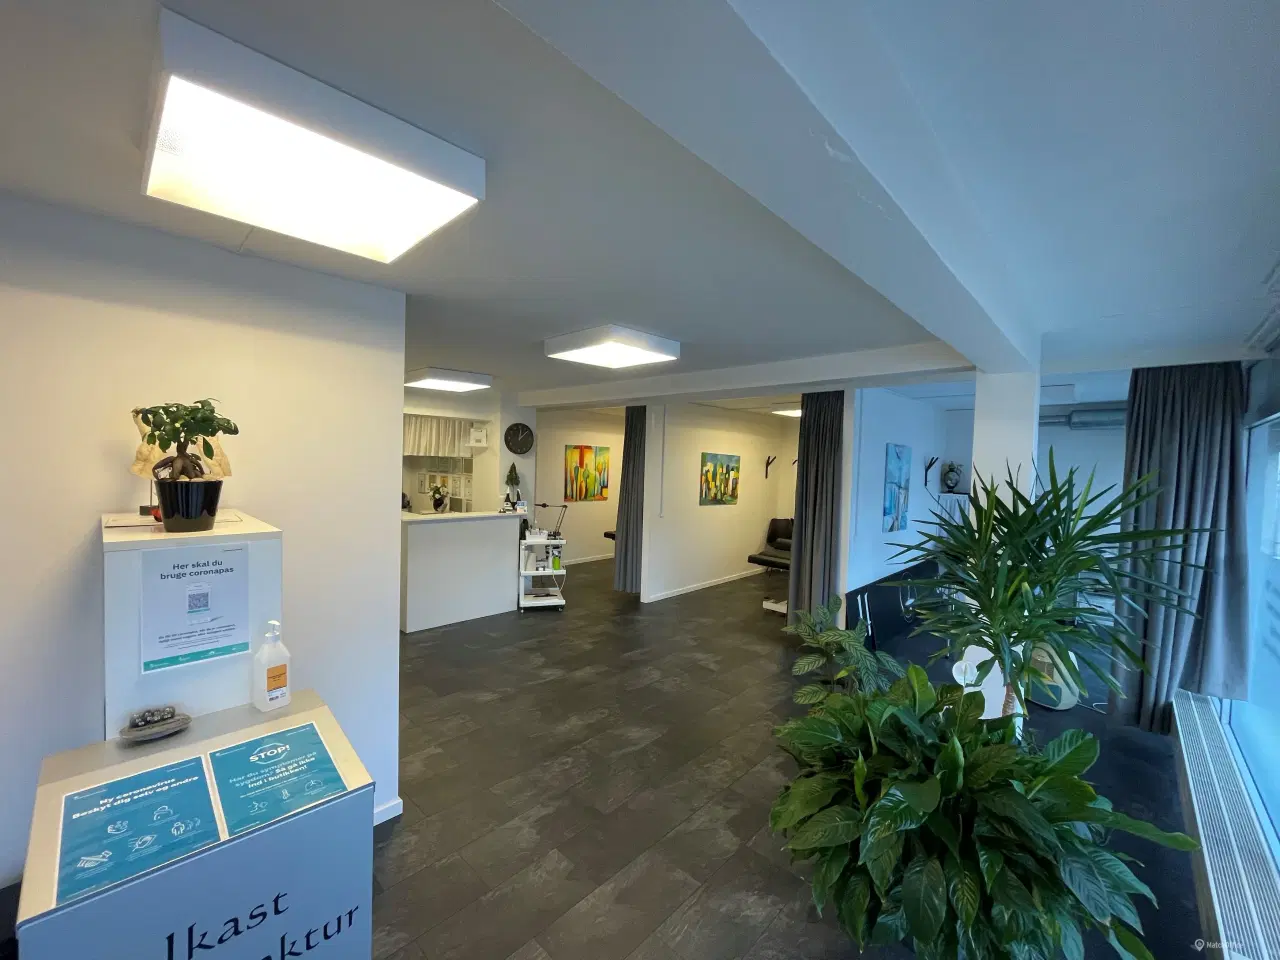 Billede 4 - 110 m2 kontor, klinik, butik centralt i Ikast by.